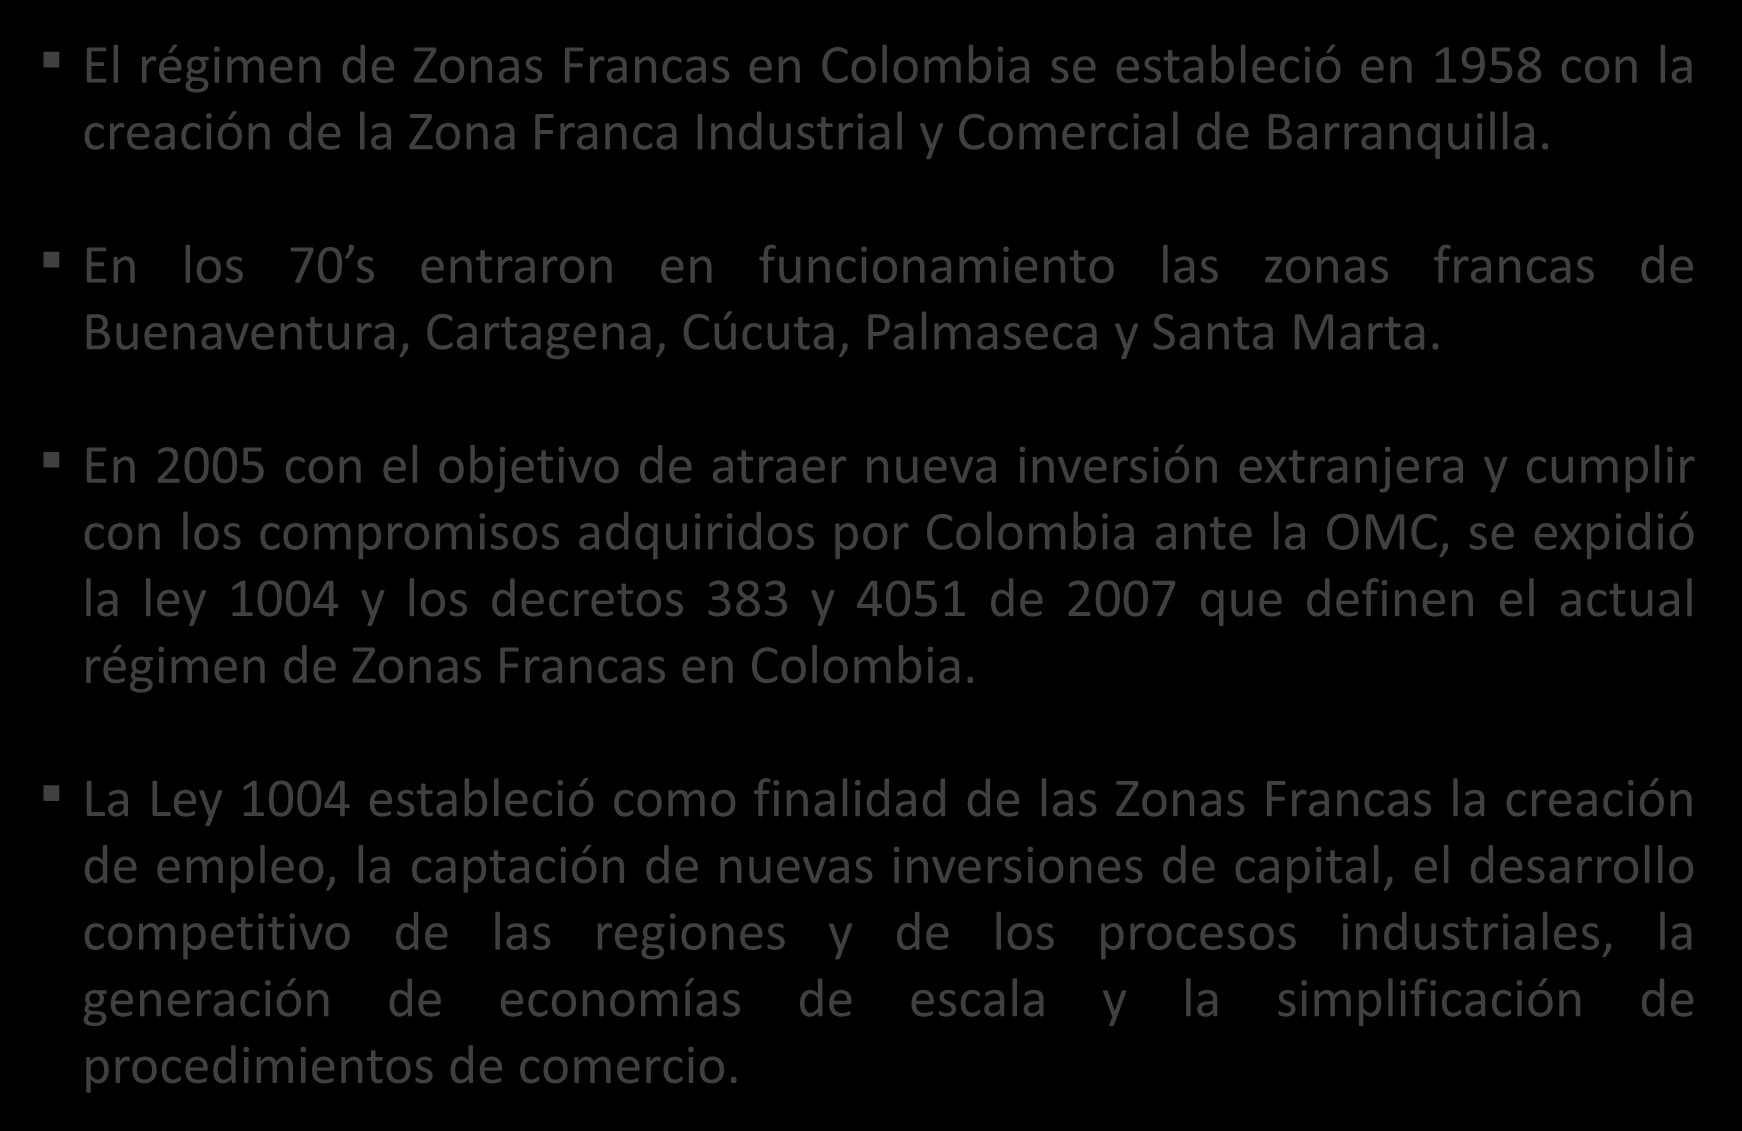 Evolución de las Zonas Francas en Colombia El régimen de Zonas Francas en Colombia se estableció en 1958 con la creación de la Zona Franca Industrial y Comercial de Barranquilla.